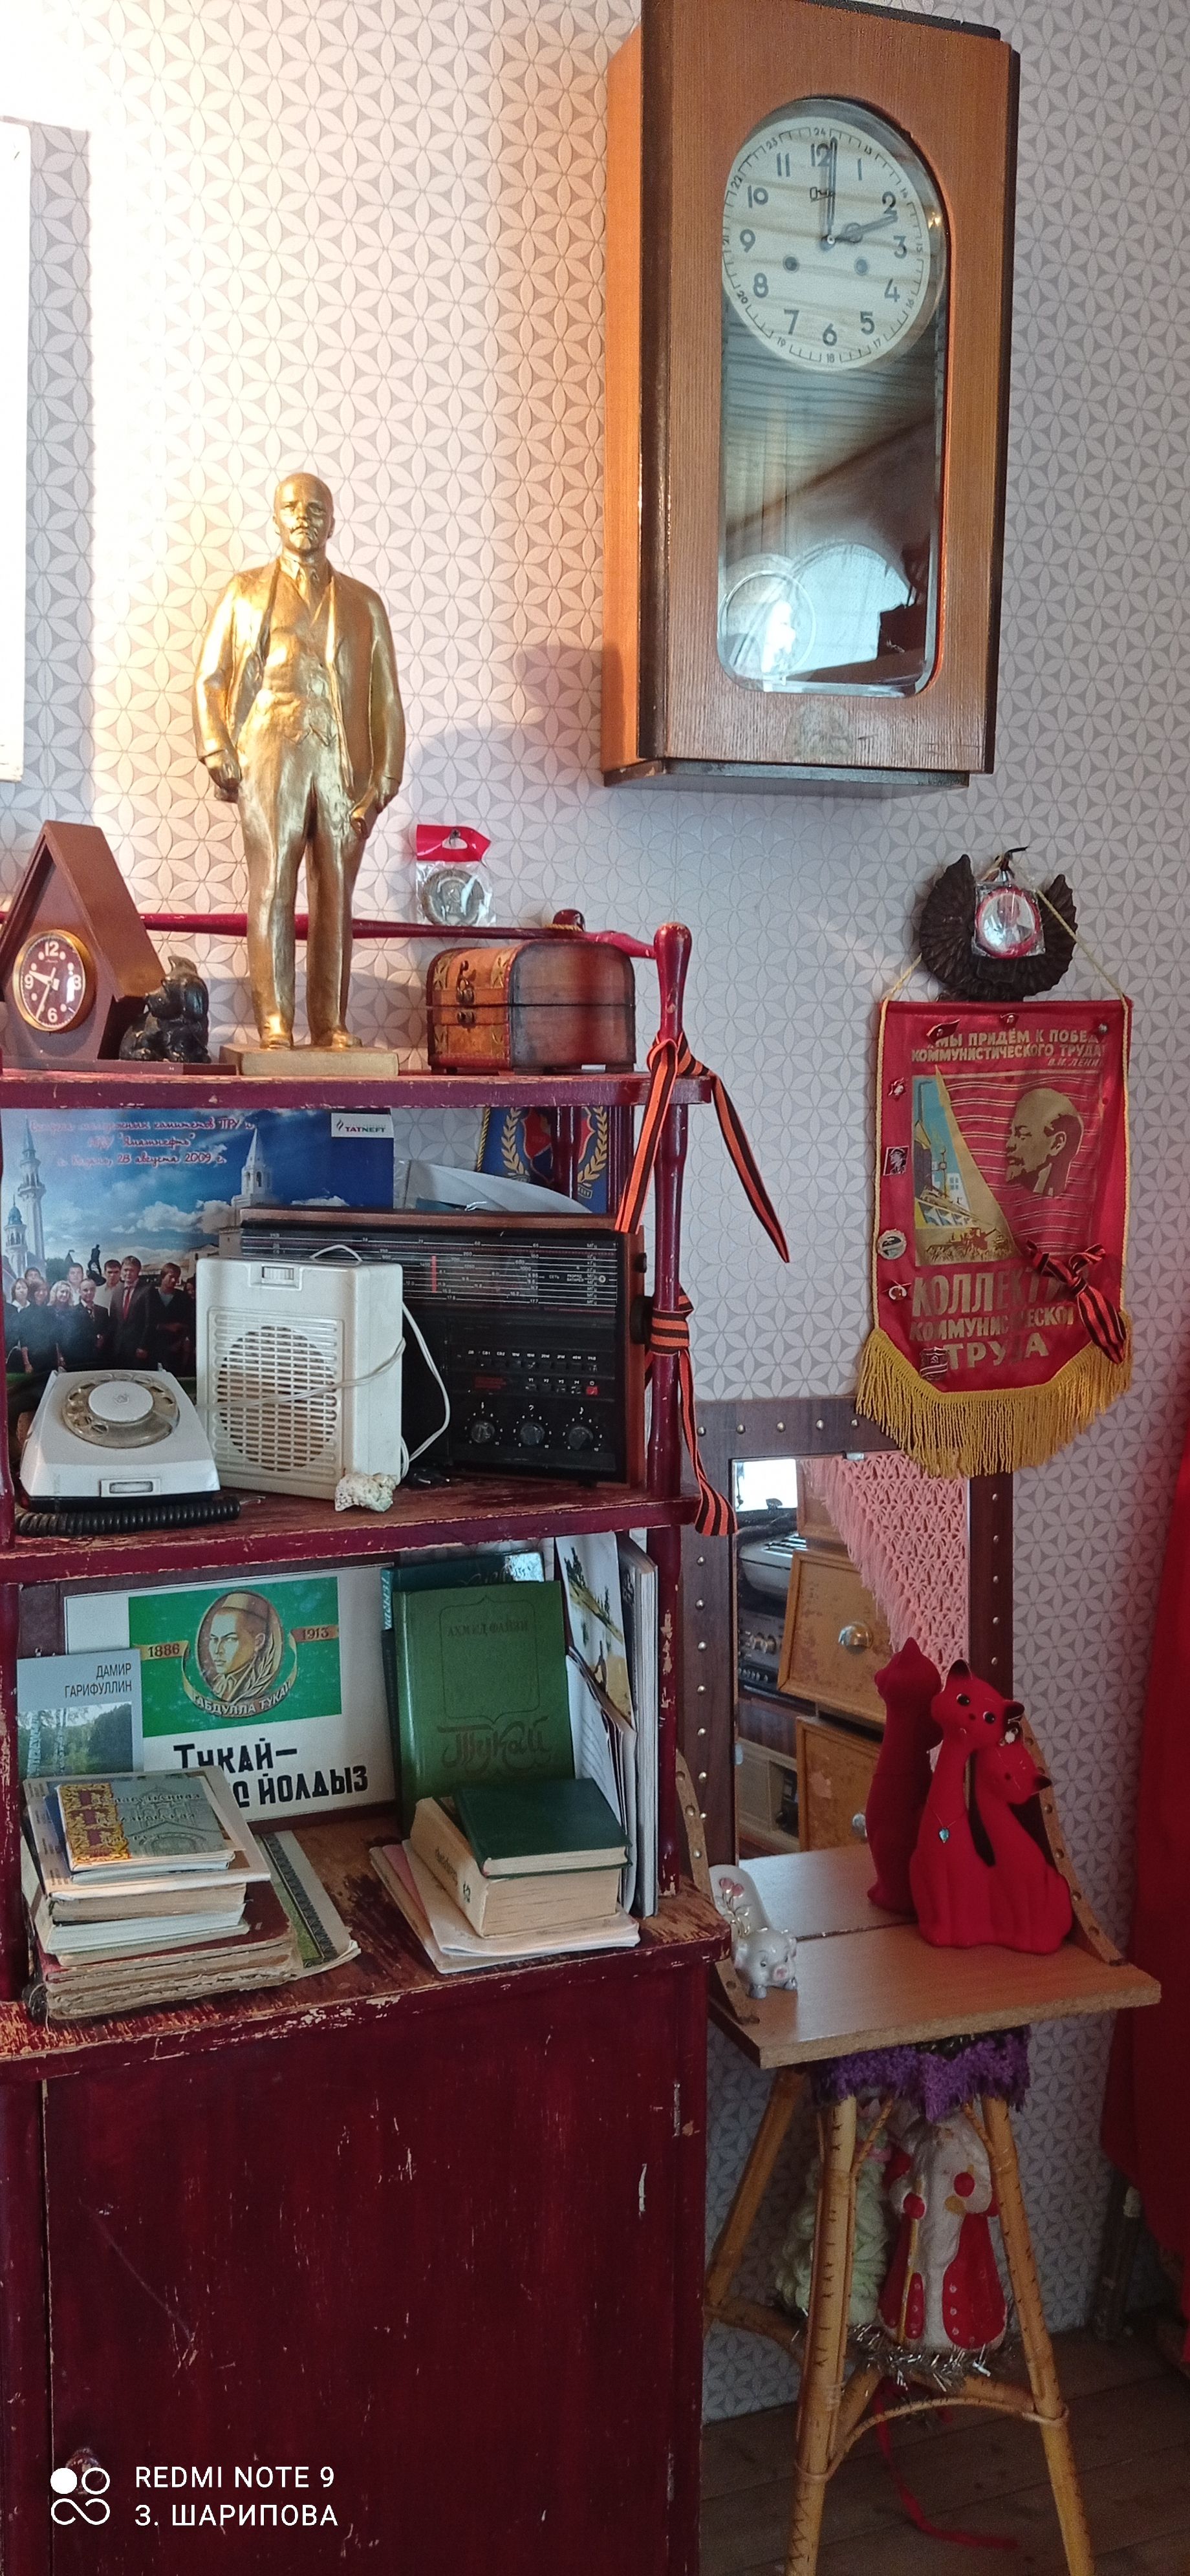 Күктау музеенда бер гасырлык экспонатлар бар